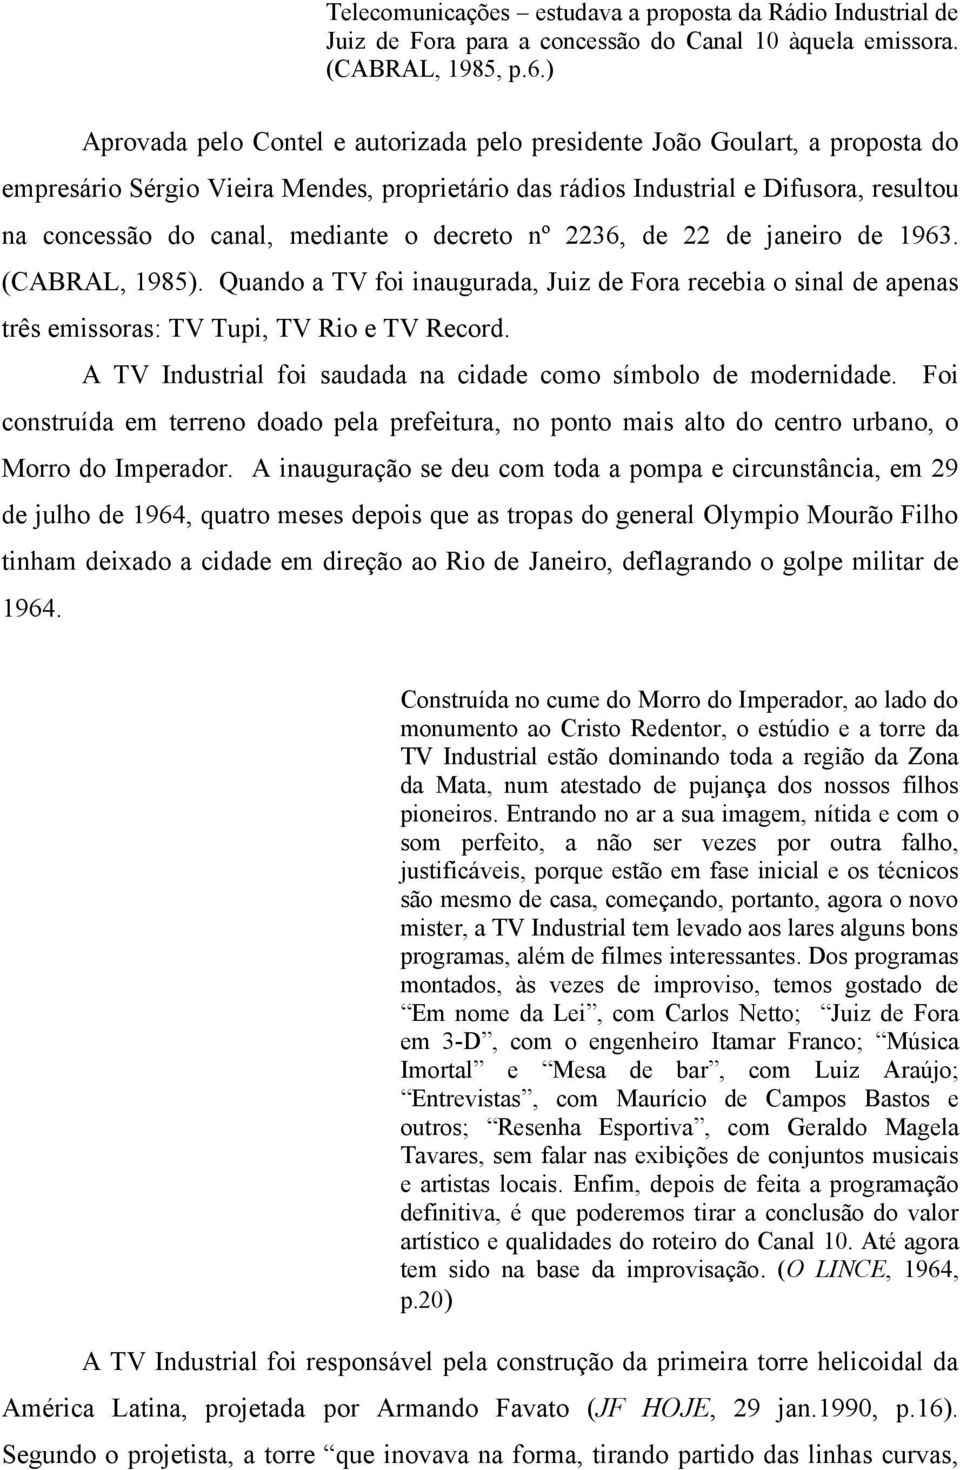 mediante o decreto nº 2236, de 22 de janeiro de 1963. (CABRAL, 1985). Quando a TV foi inaugurada, Juiz de Fora recebia o sinal de apenas três emissoras: TV Tupi, TV Rio e TV Record.